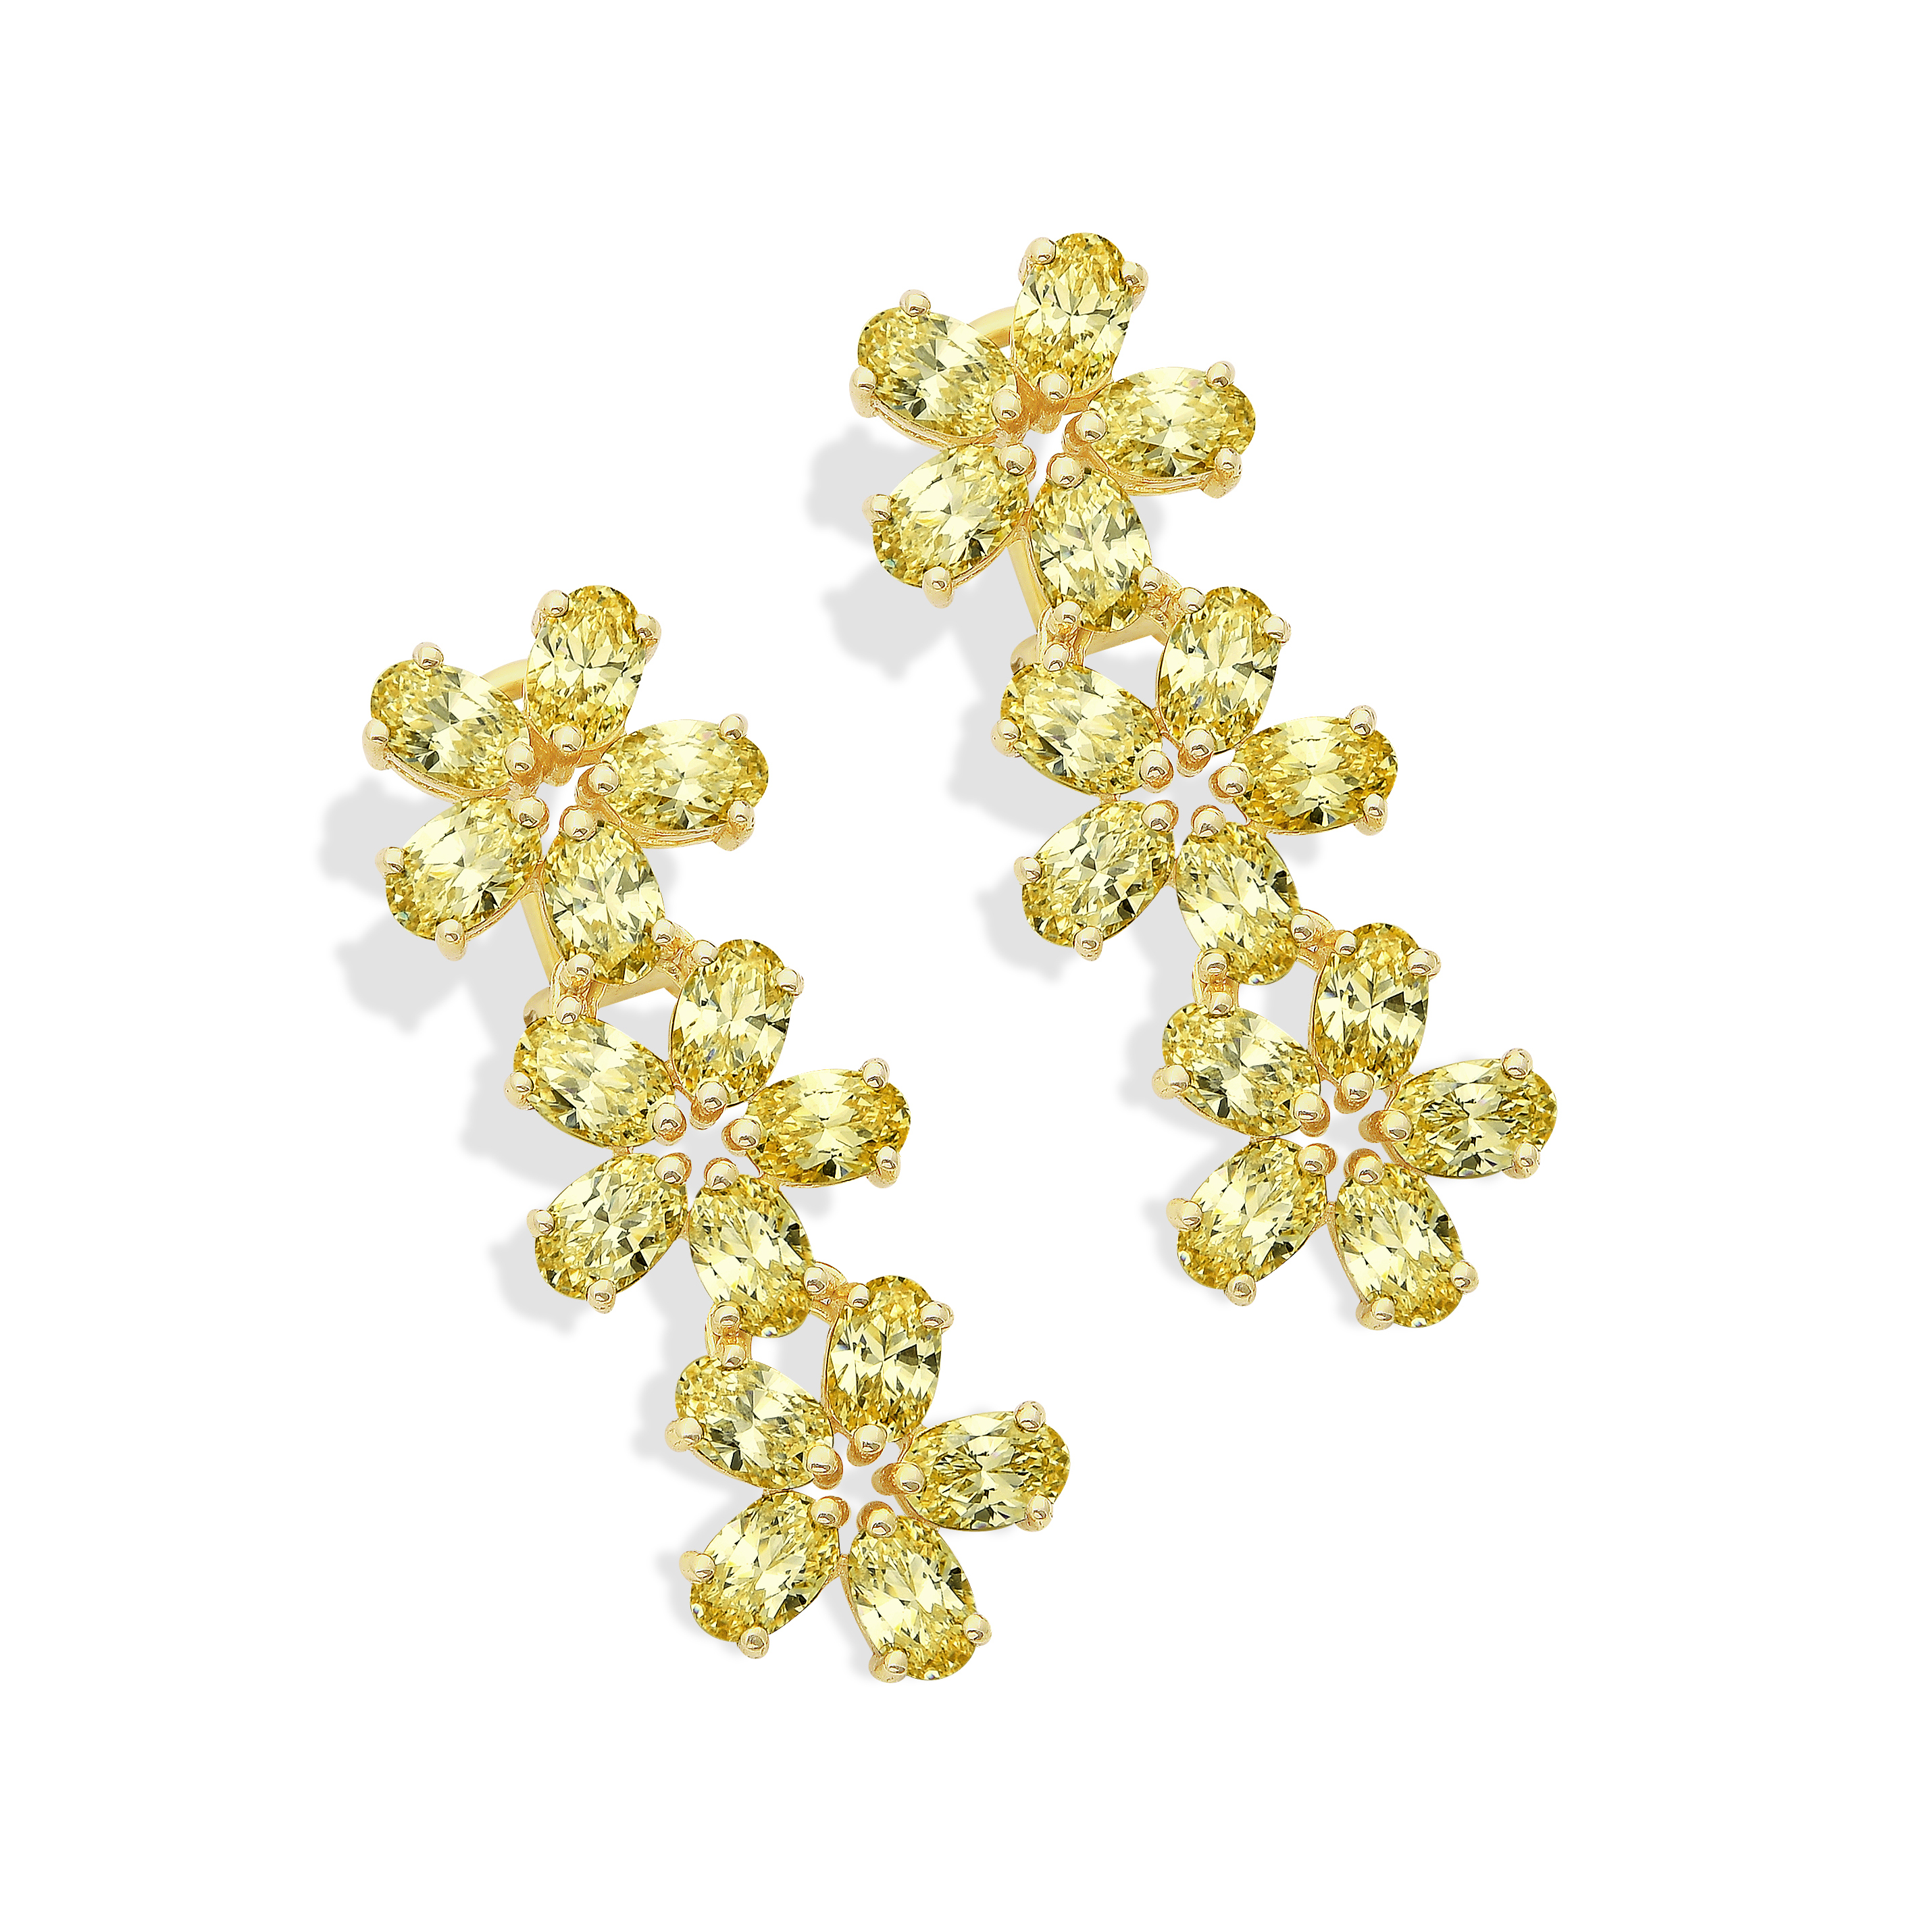 floral earrings